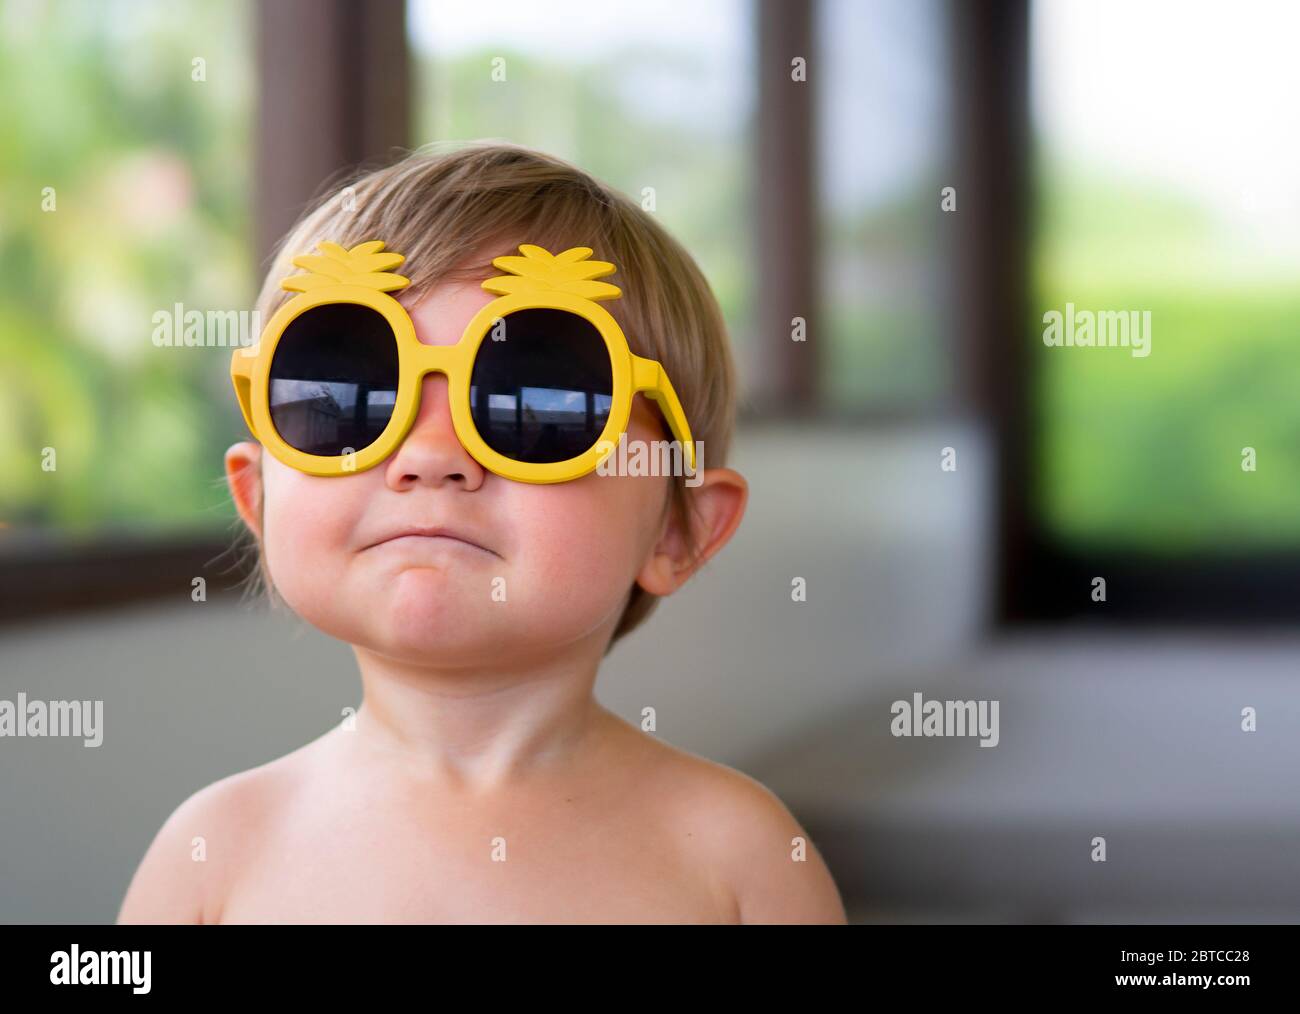 Retrato de un niño de dos años que llevaba gafas de sol amarillas mirando a la cámara Foto de stock